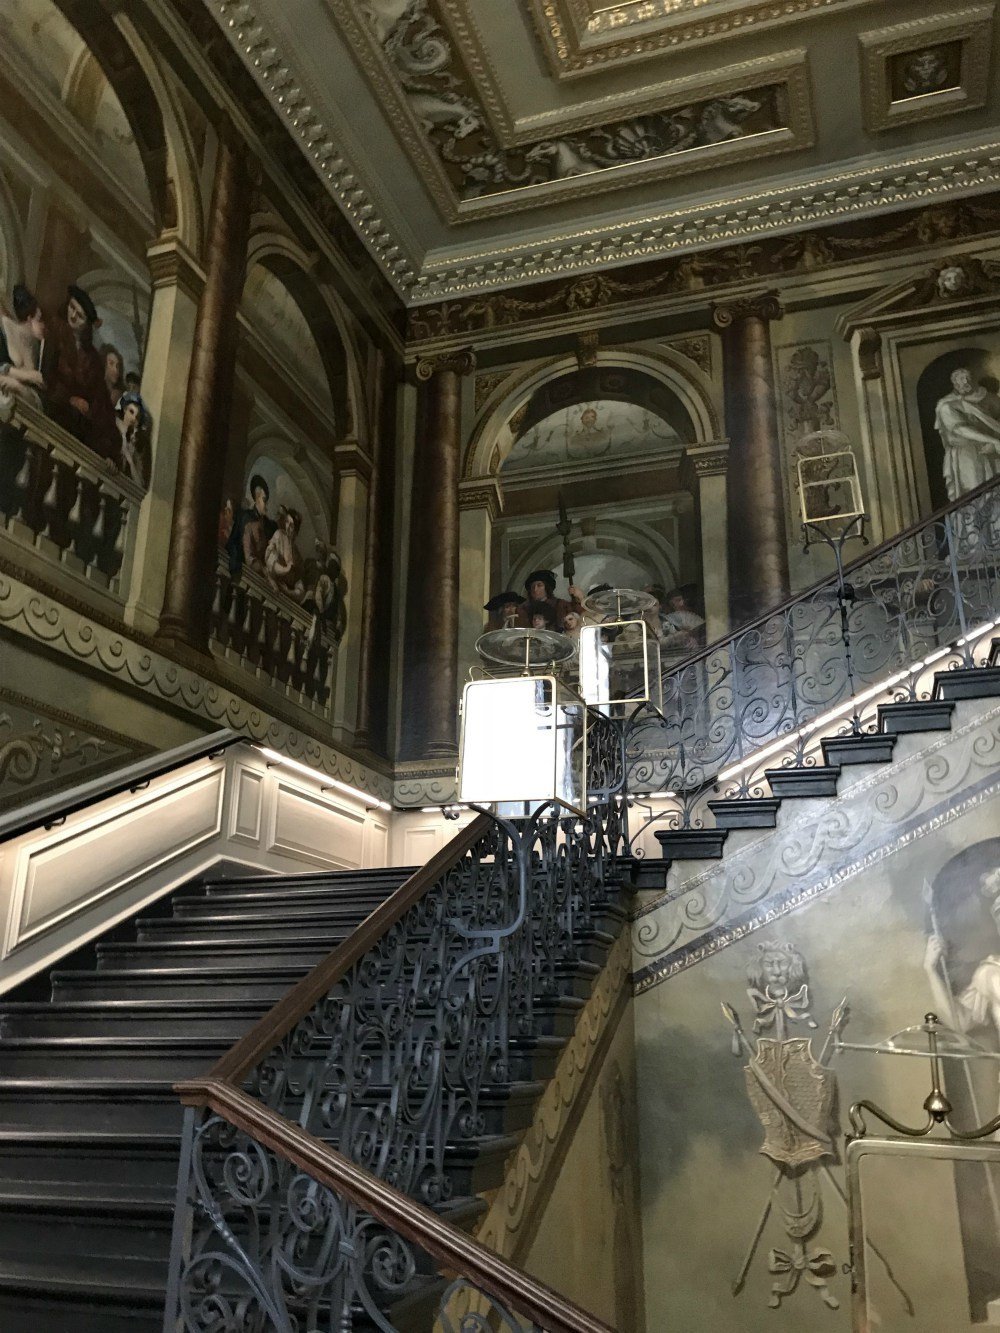 Kings staircase at Kensington Palace, London